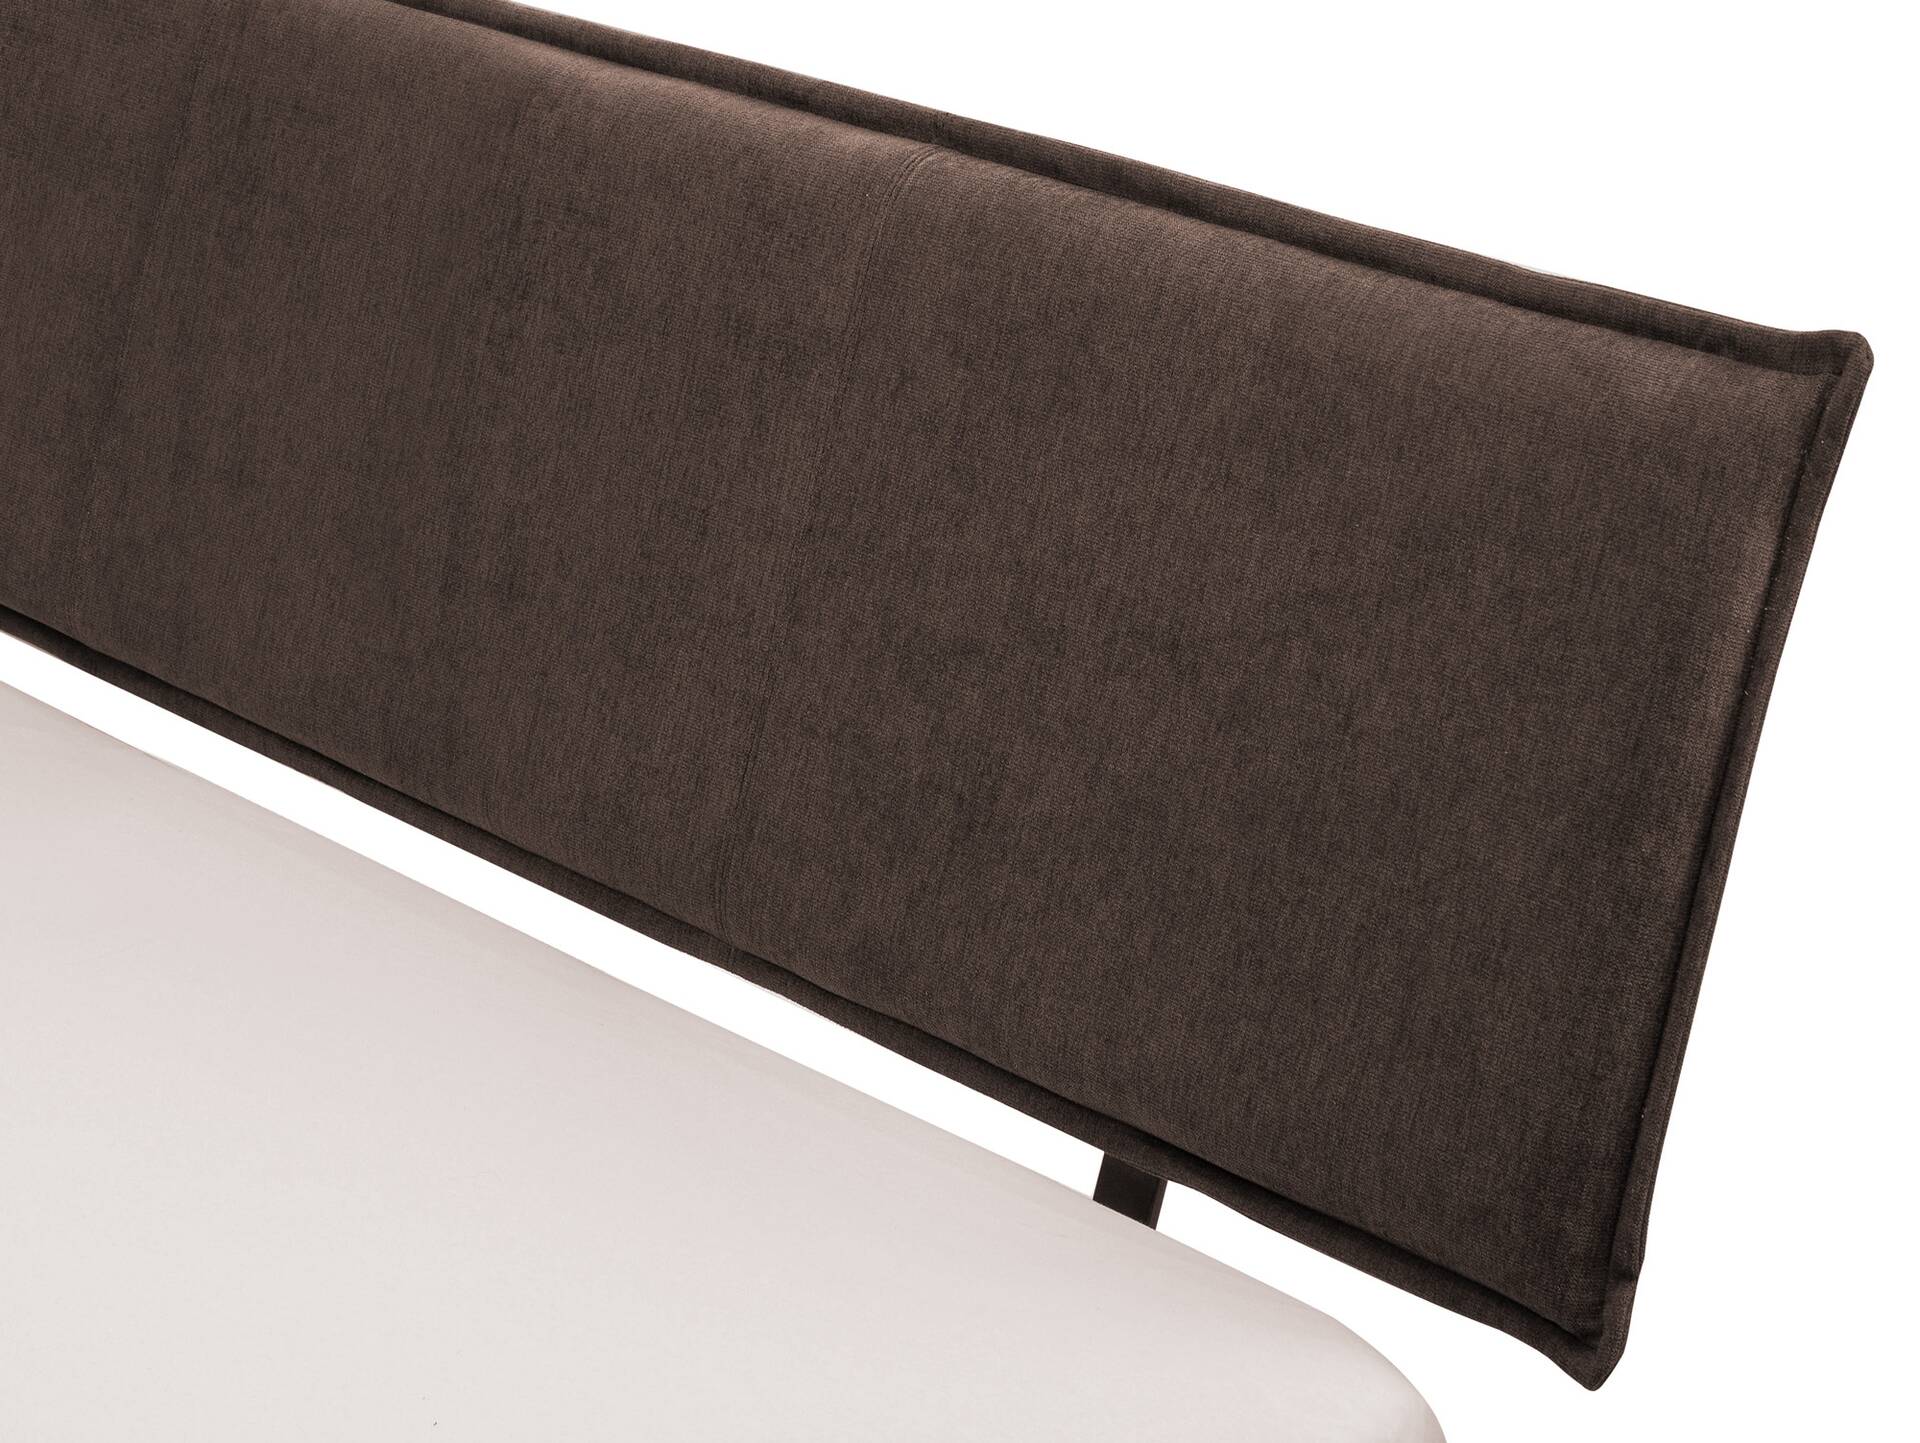 CORDINO 4-Fuß-Bett aus Eiche mit Polster-Kopfteil, Material Massivholz 90 x 200 cm | Eiche lackiert | Stoff Braun | gebürstet